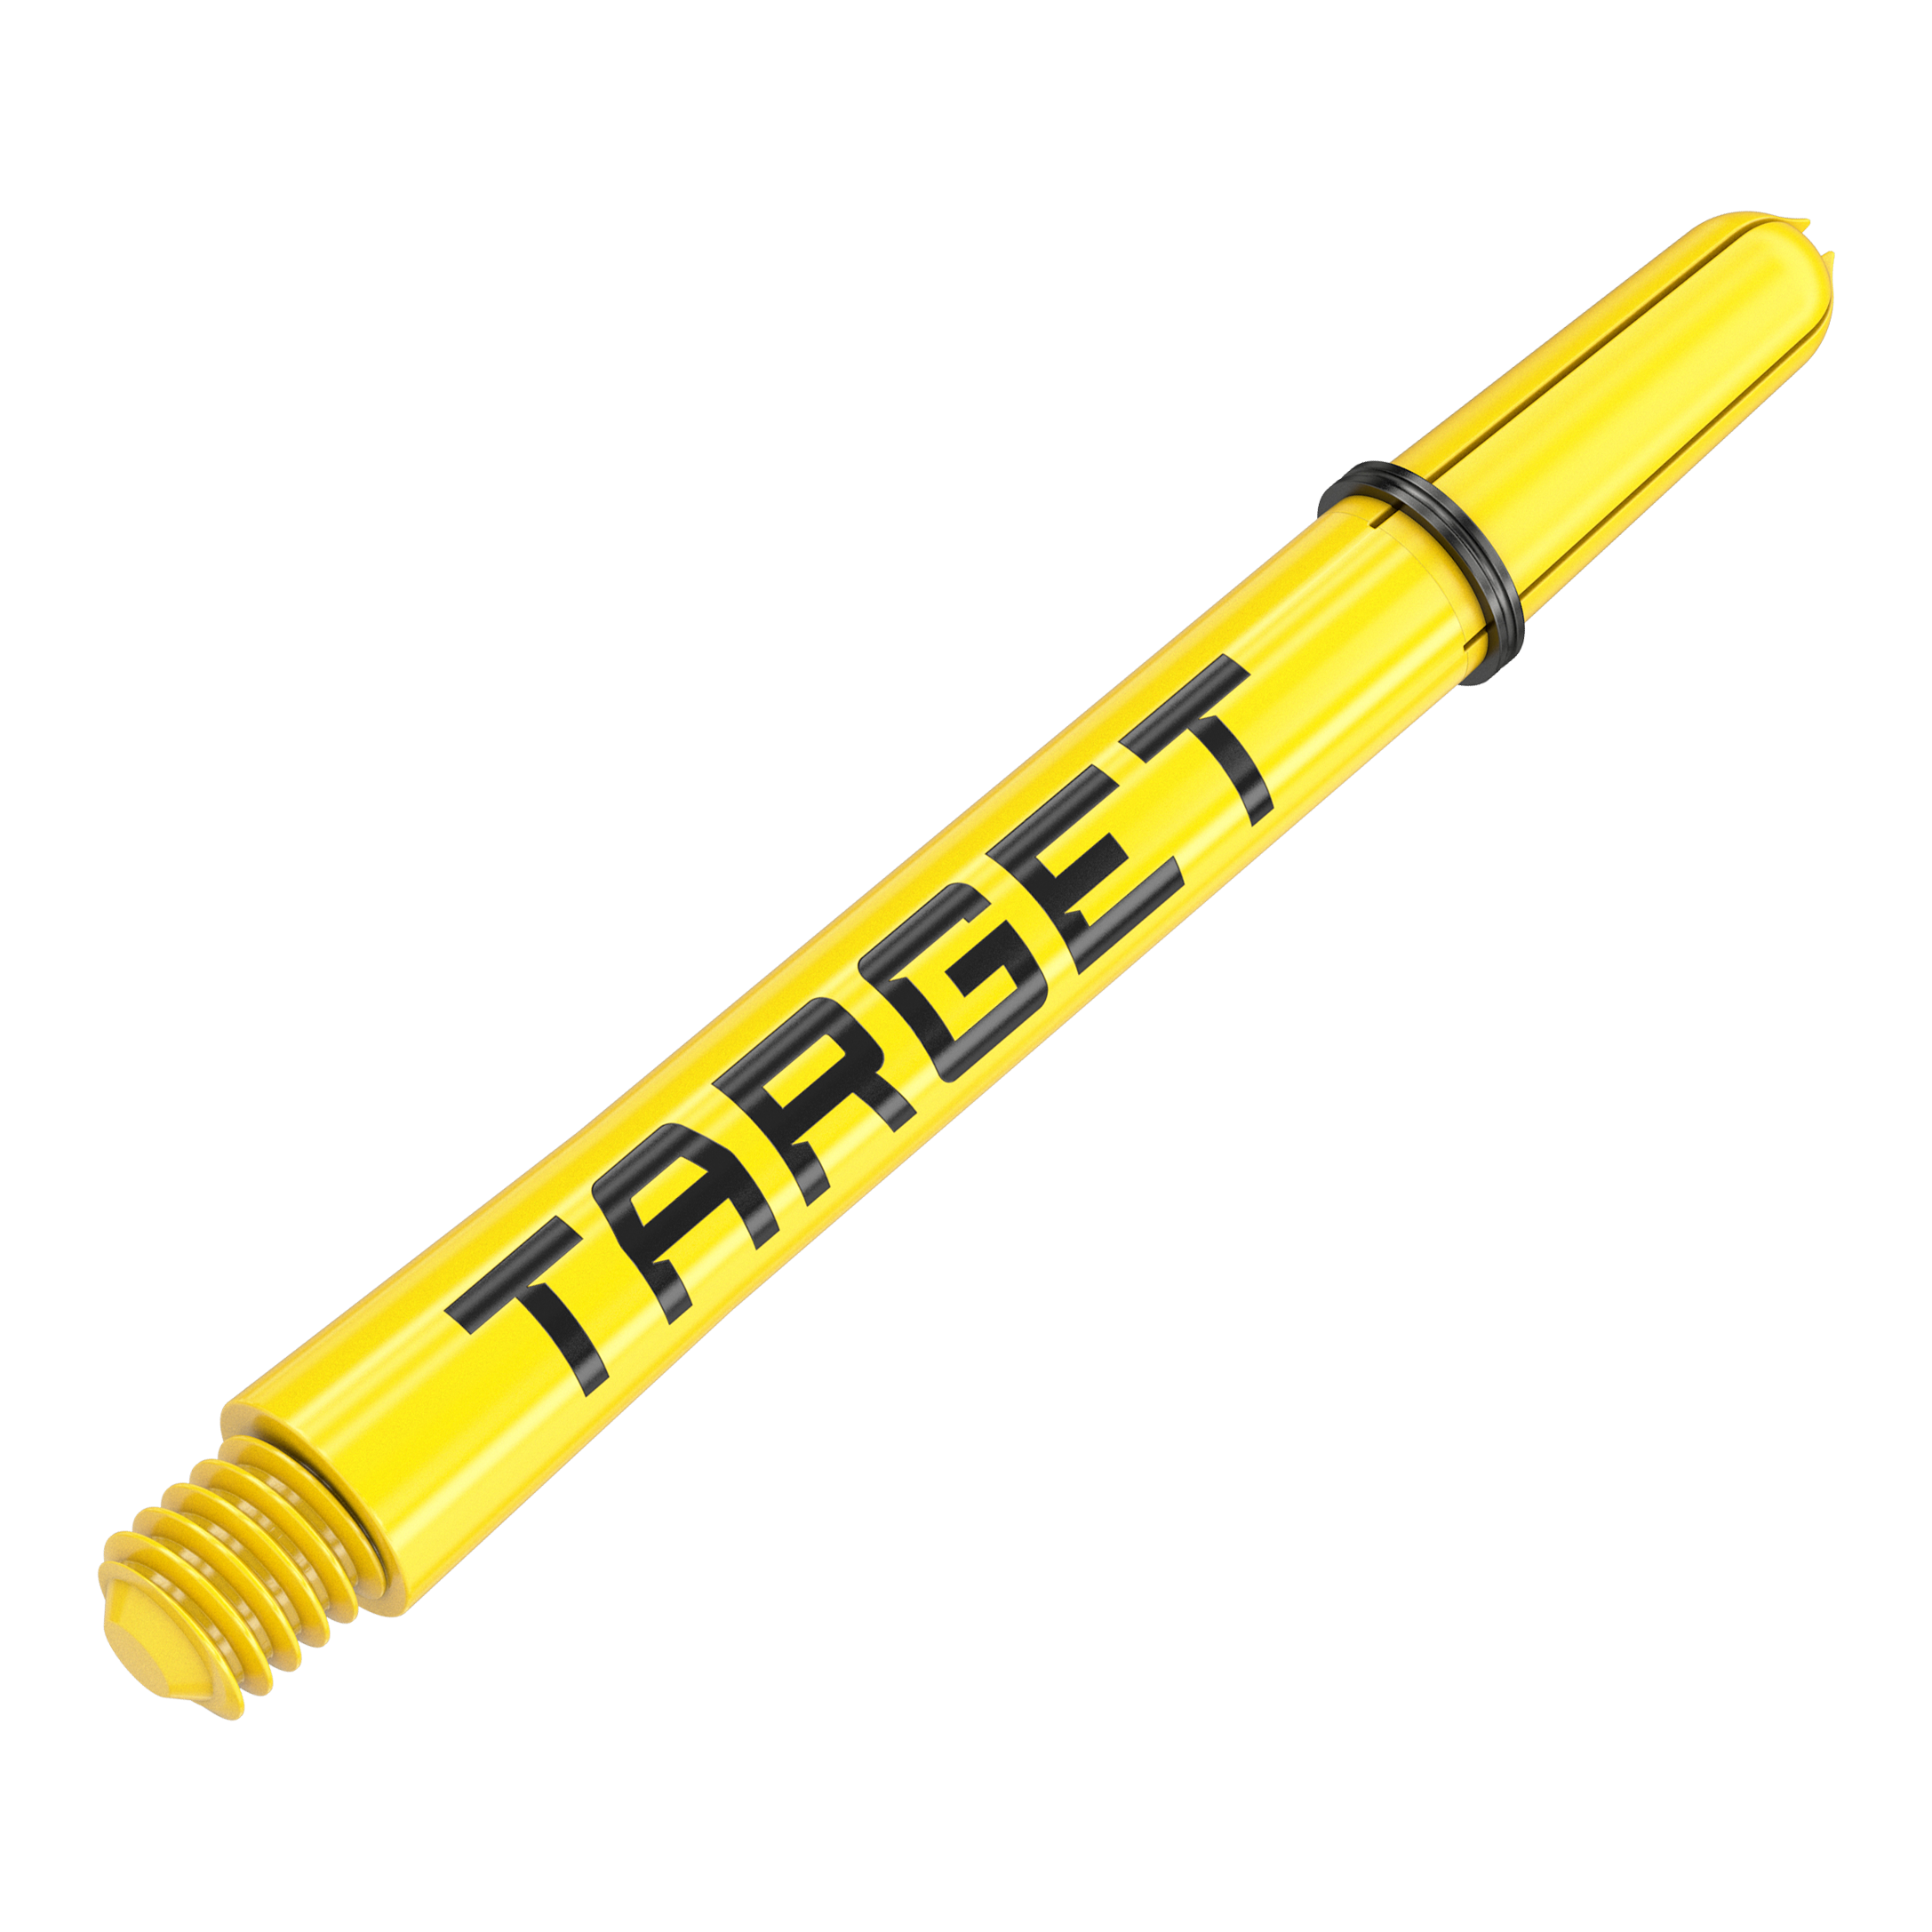 Target Pro Grip TAG hřídele - 3 sady - žlutá